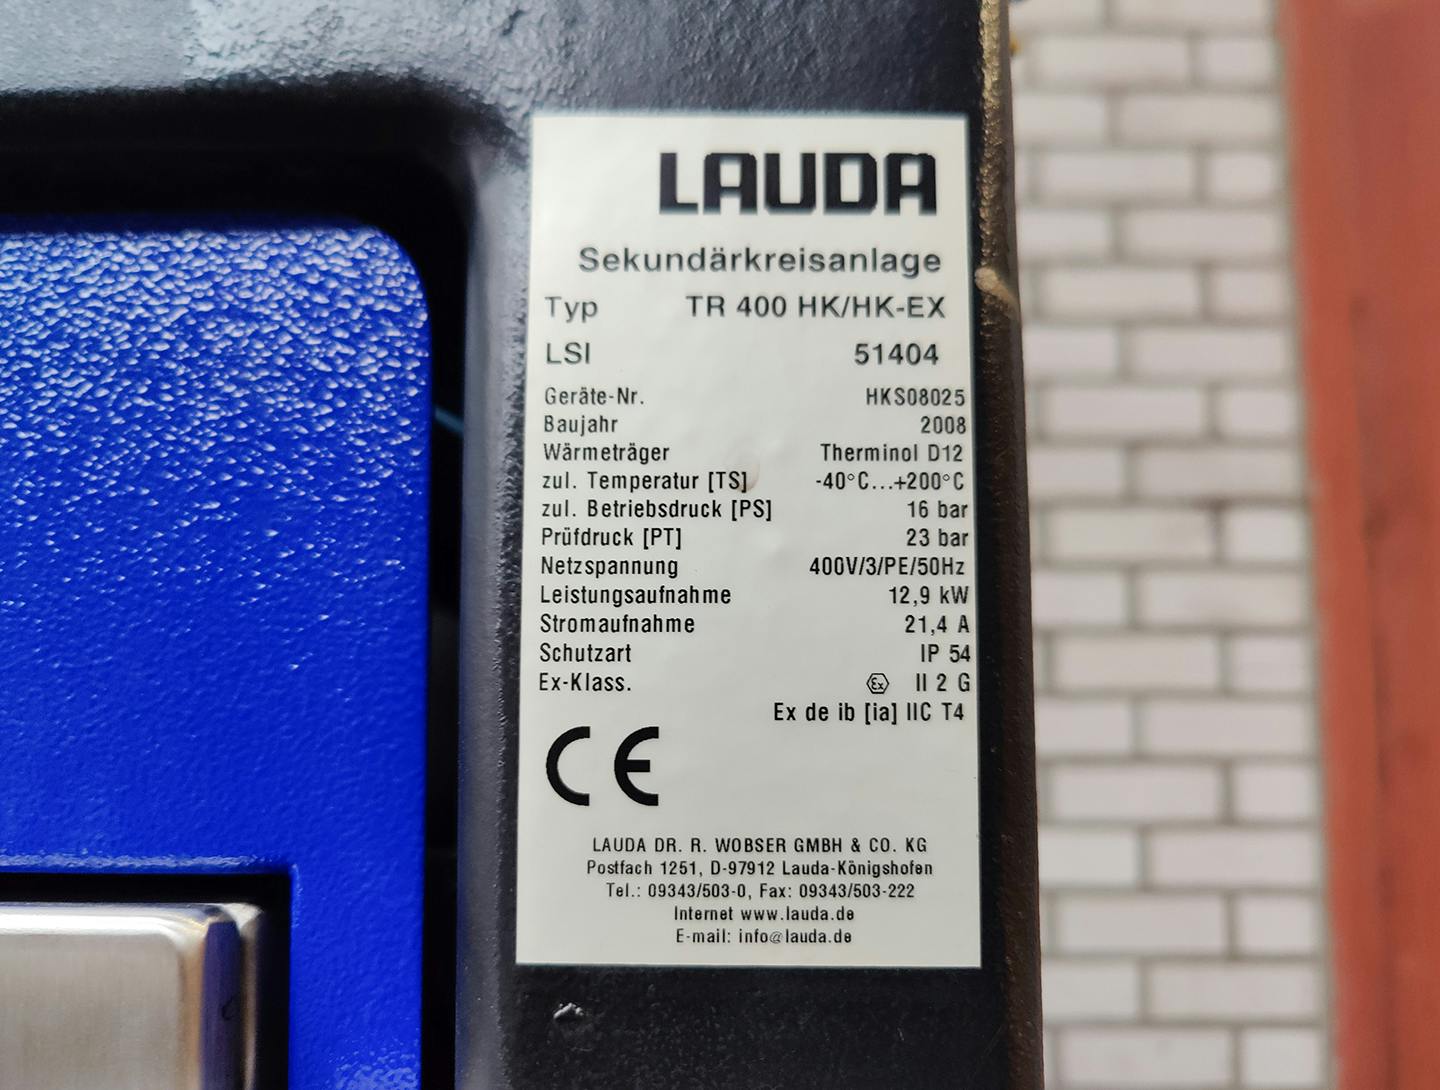 Lauda TR400 HK/HK-EX"secondary circuit system" - Temperature control unit - image 6